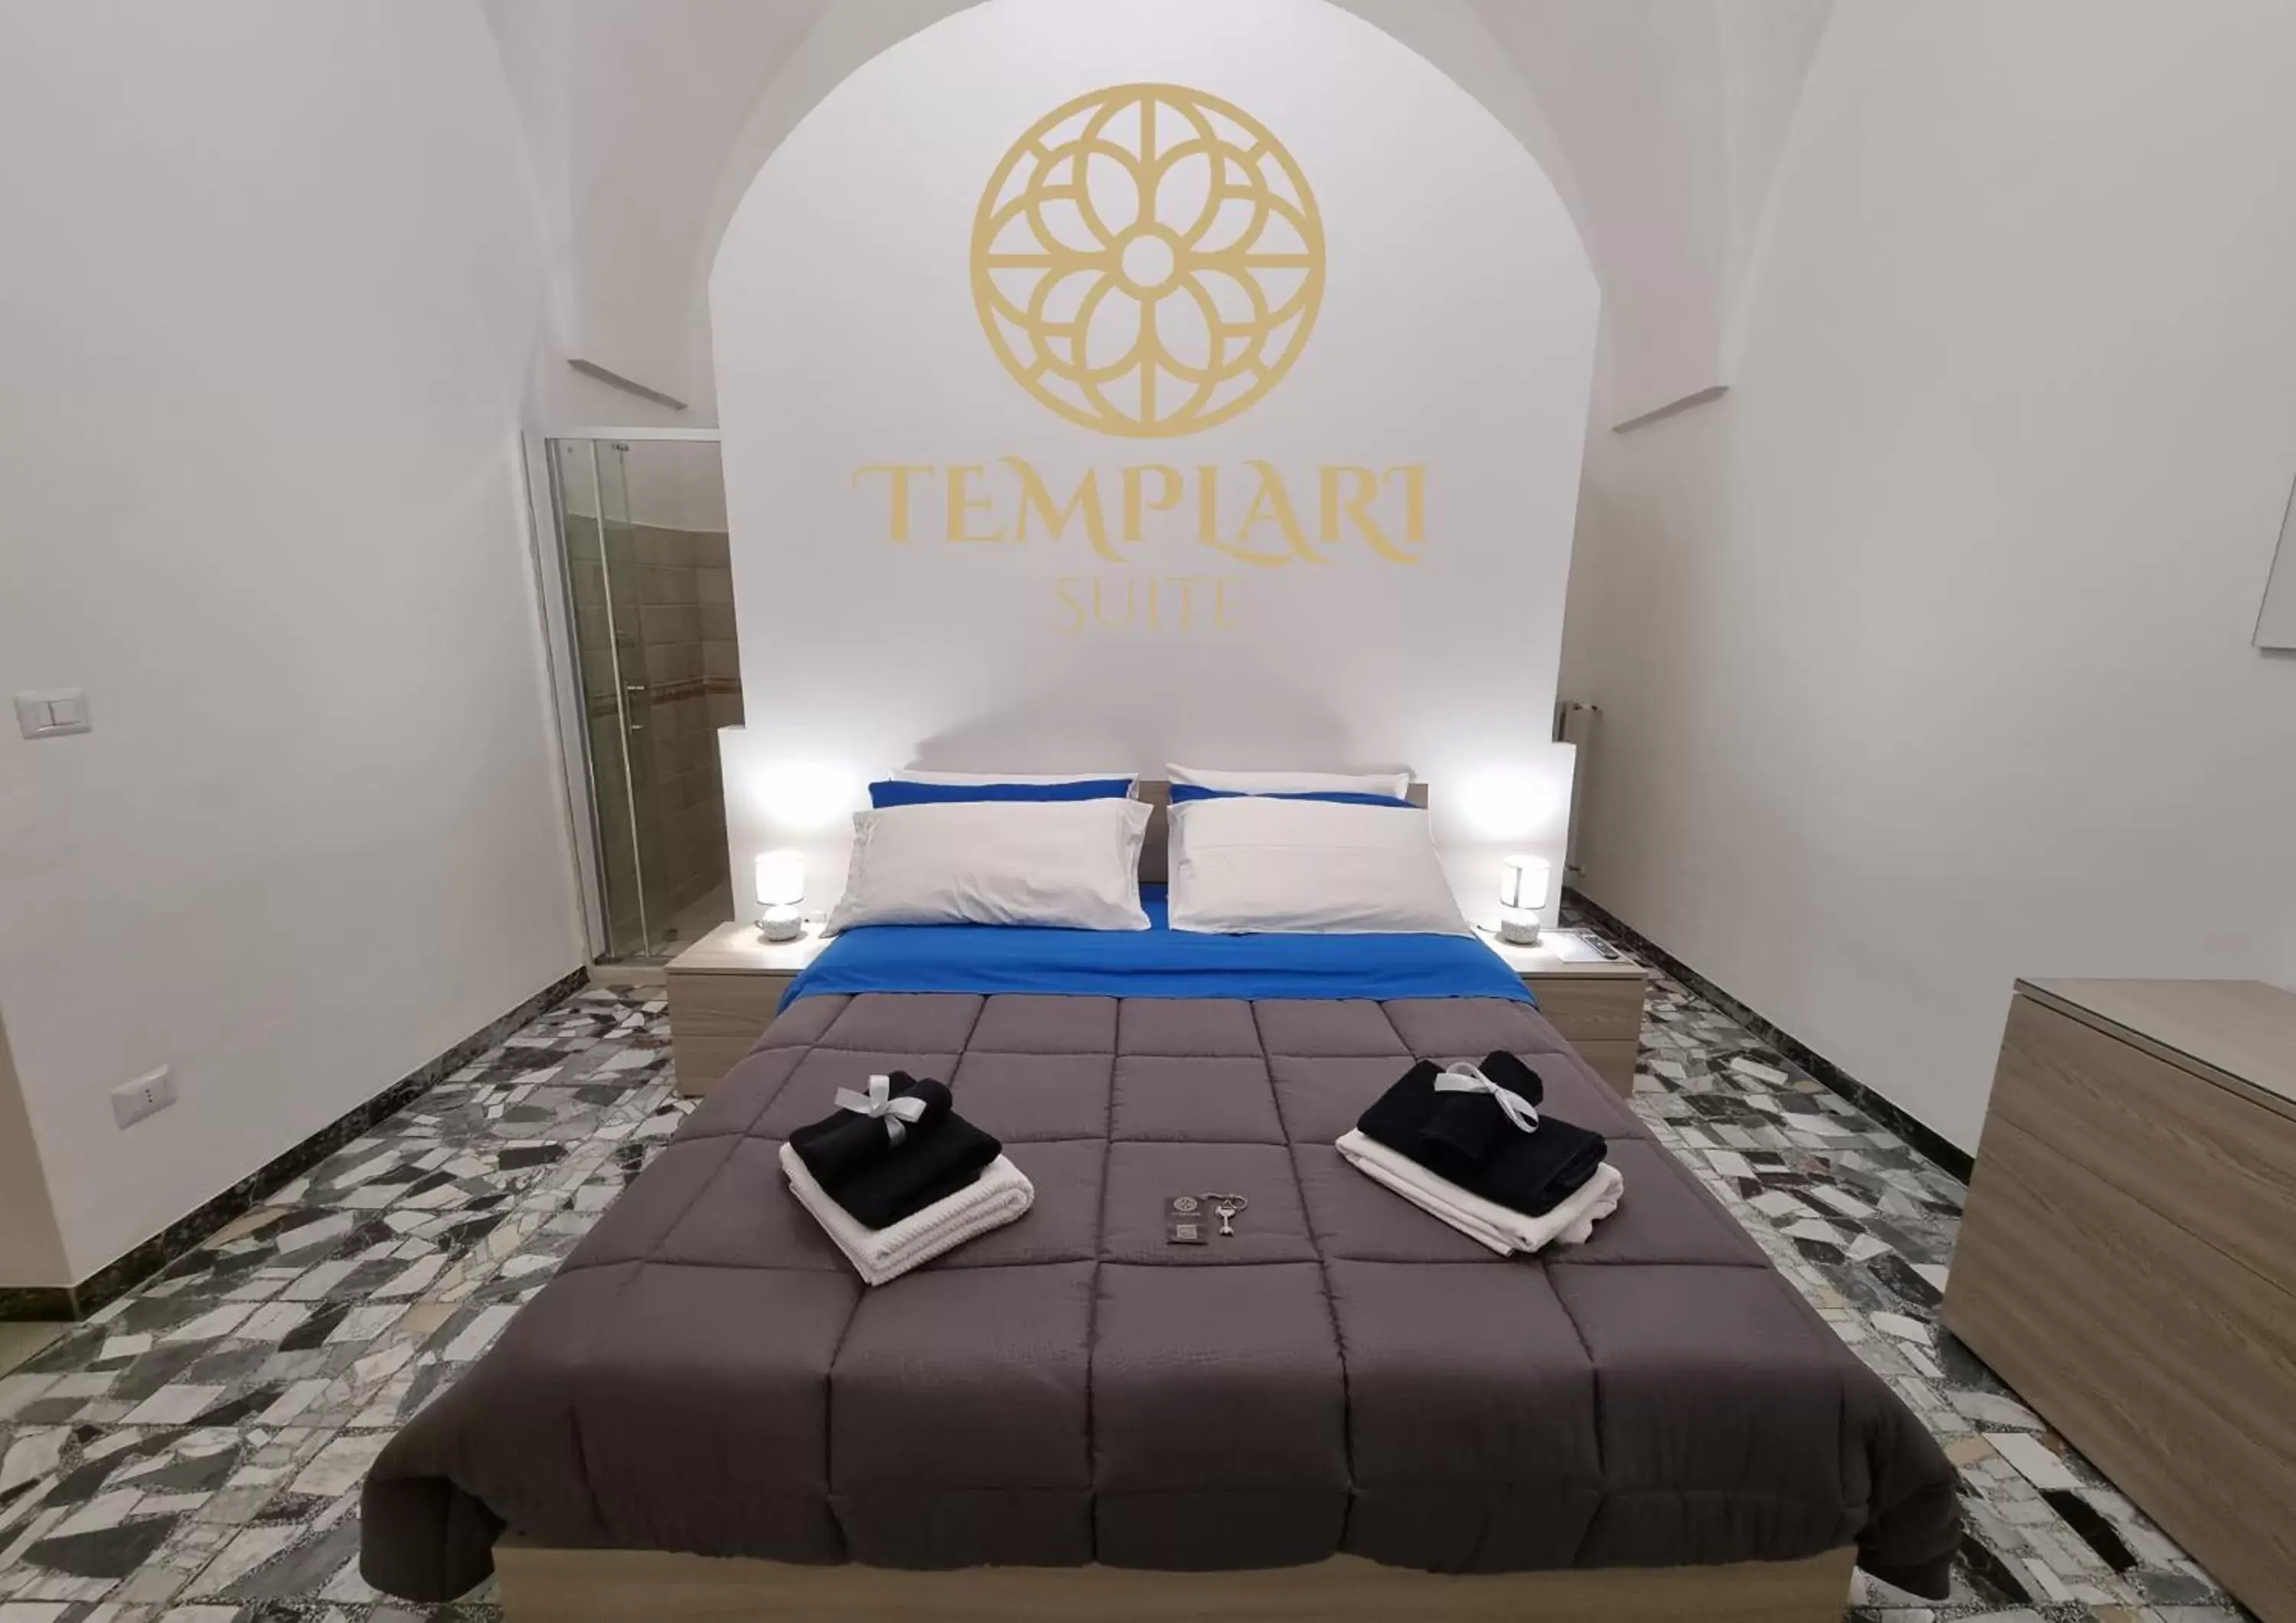 Bed in TEMPLARI SUITE - B&B Mesagne